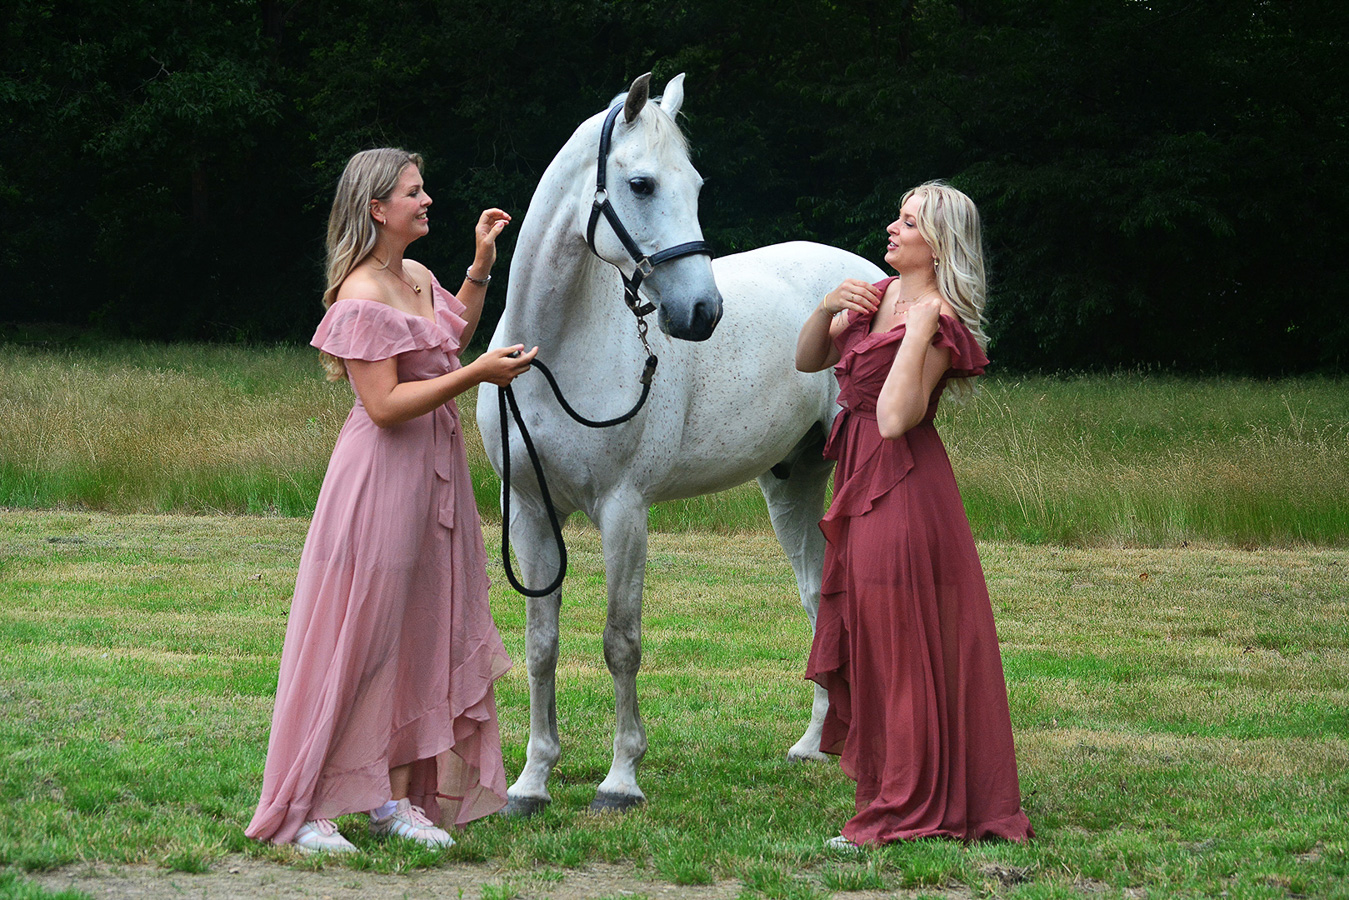 Leo Vangrieken - Meisjes met wit paard - (1/800 sec. bij f / 7,1 ISO 800)